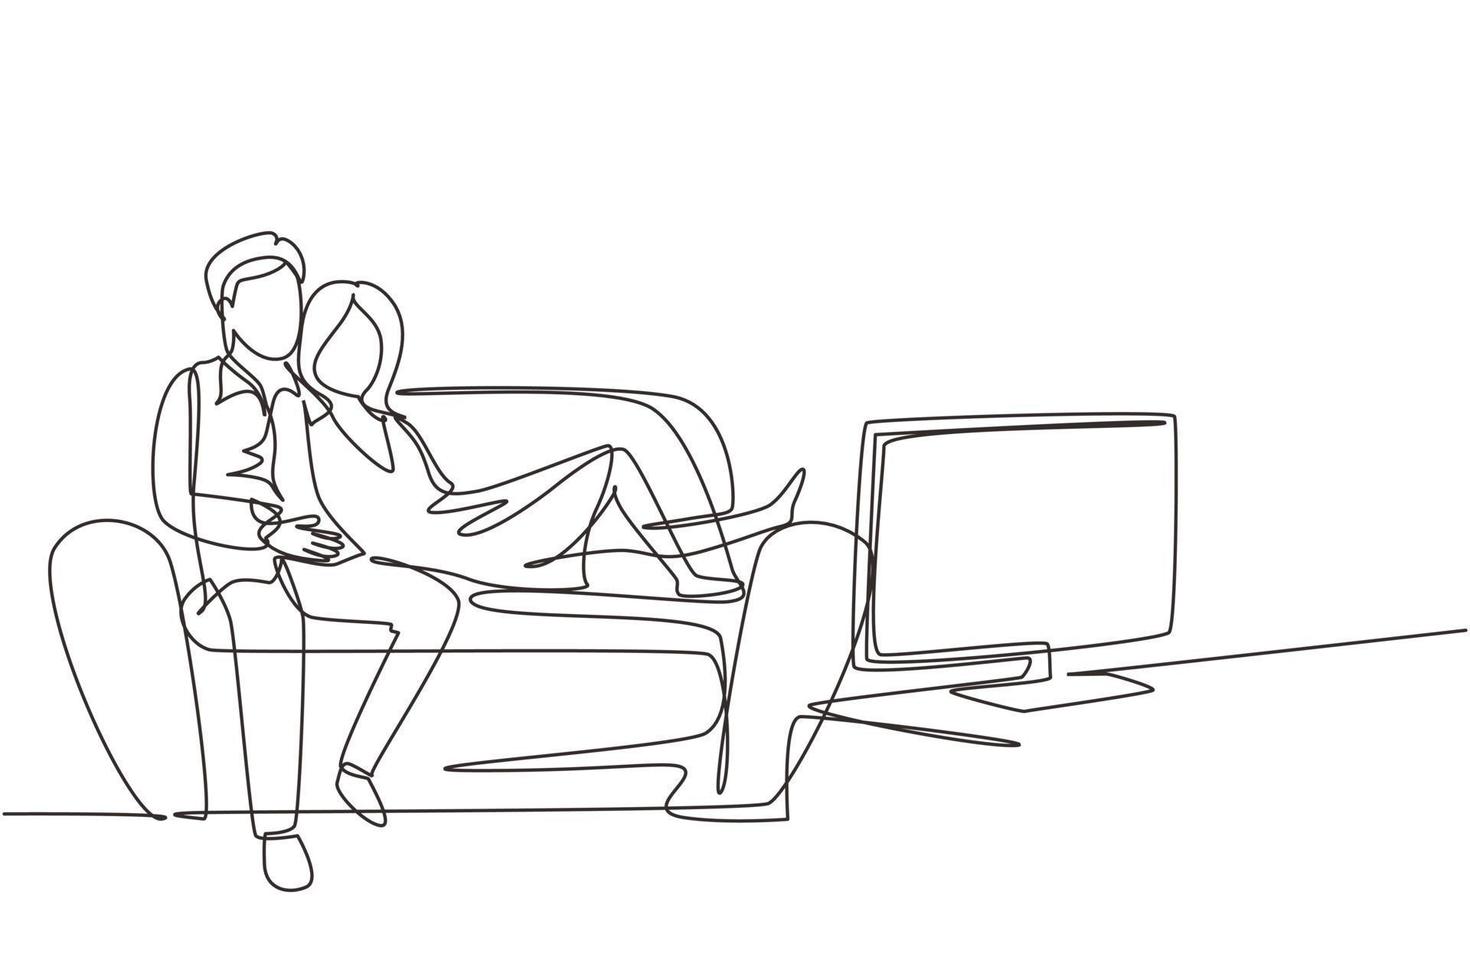 casal de desenho contínuo de uma linha assistindo tv juntos sentados no sofá. feliz homem e mulher relaxante na sala de estar. casal romântico se divertindo juntos. ilustração vetorial de desenho de linha única vetor